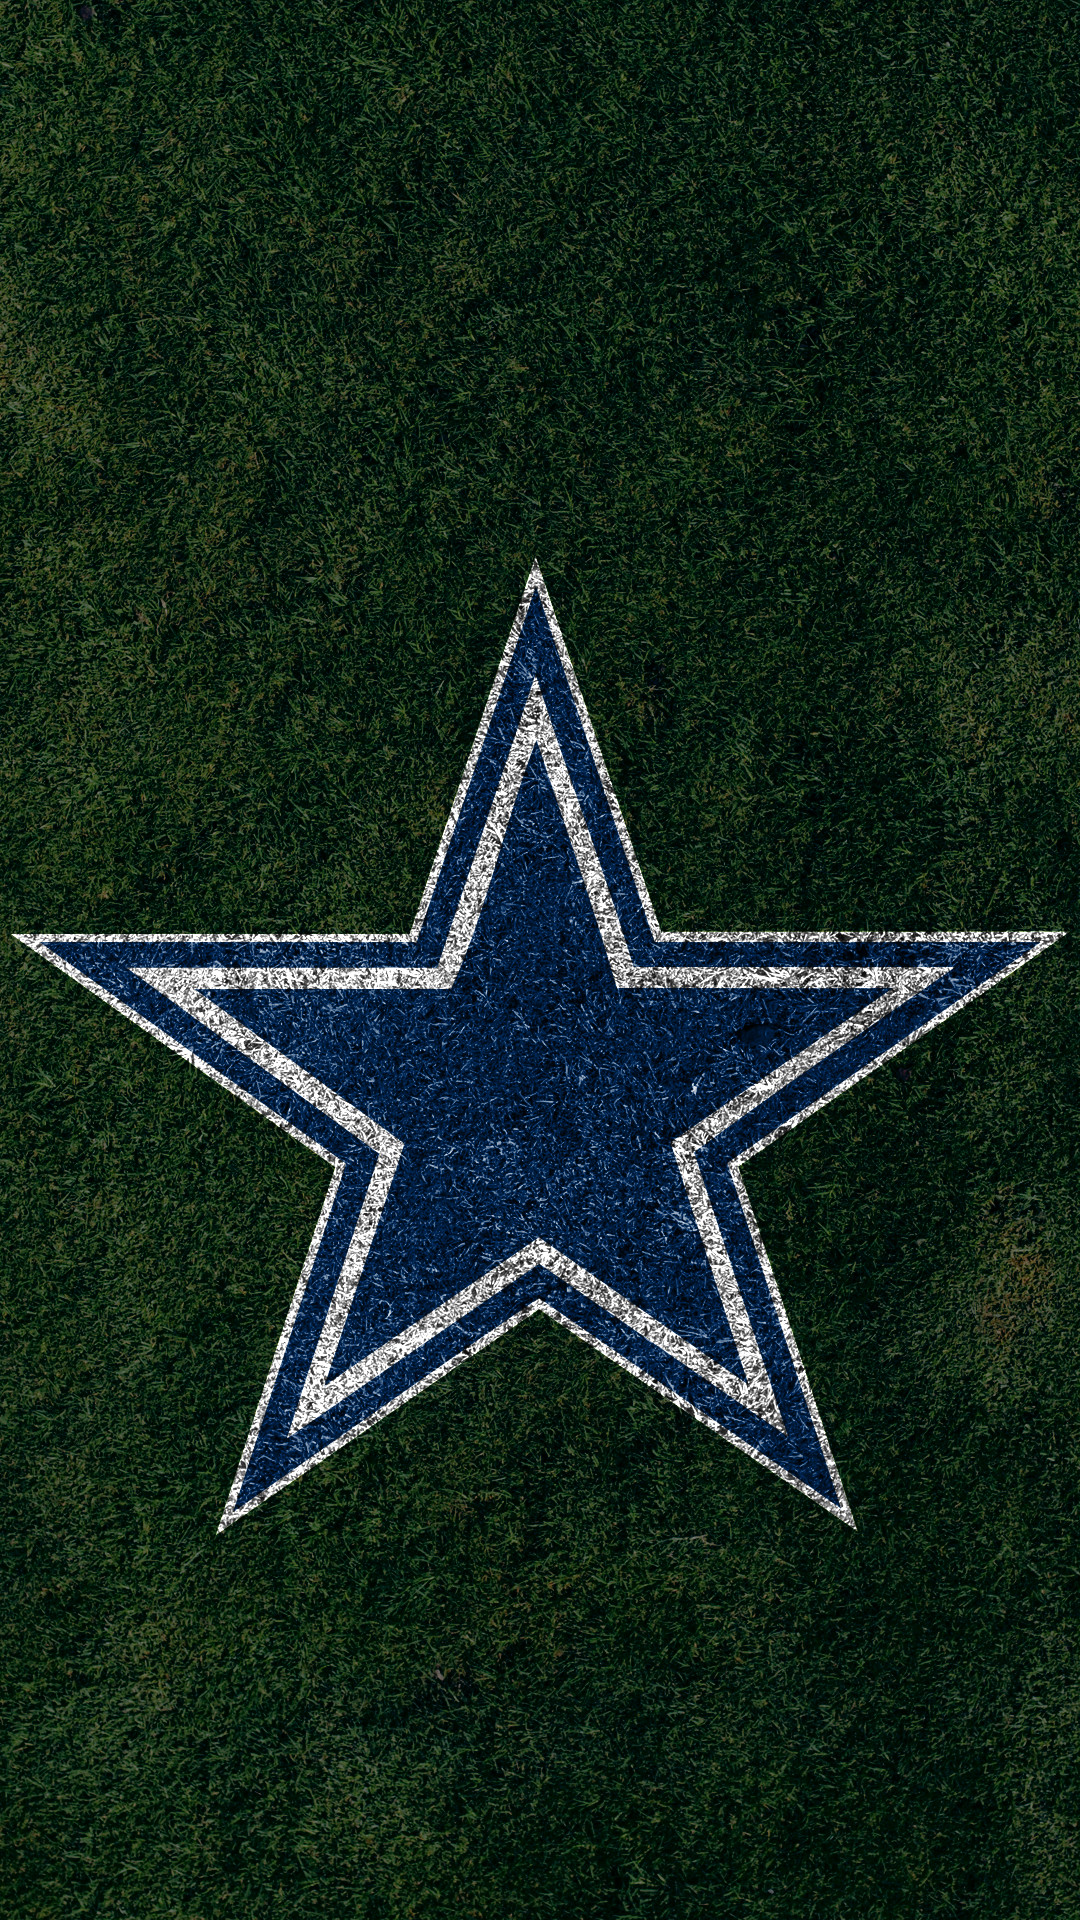 Dallas Cowboys Backgrounds For Desktop Wallpaper - Dallas Cowboys Black And White , HD Wallpaper & Backgrounds